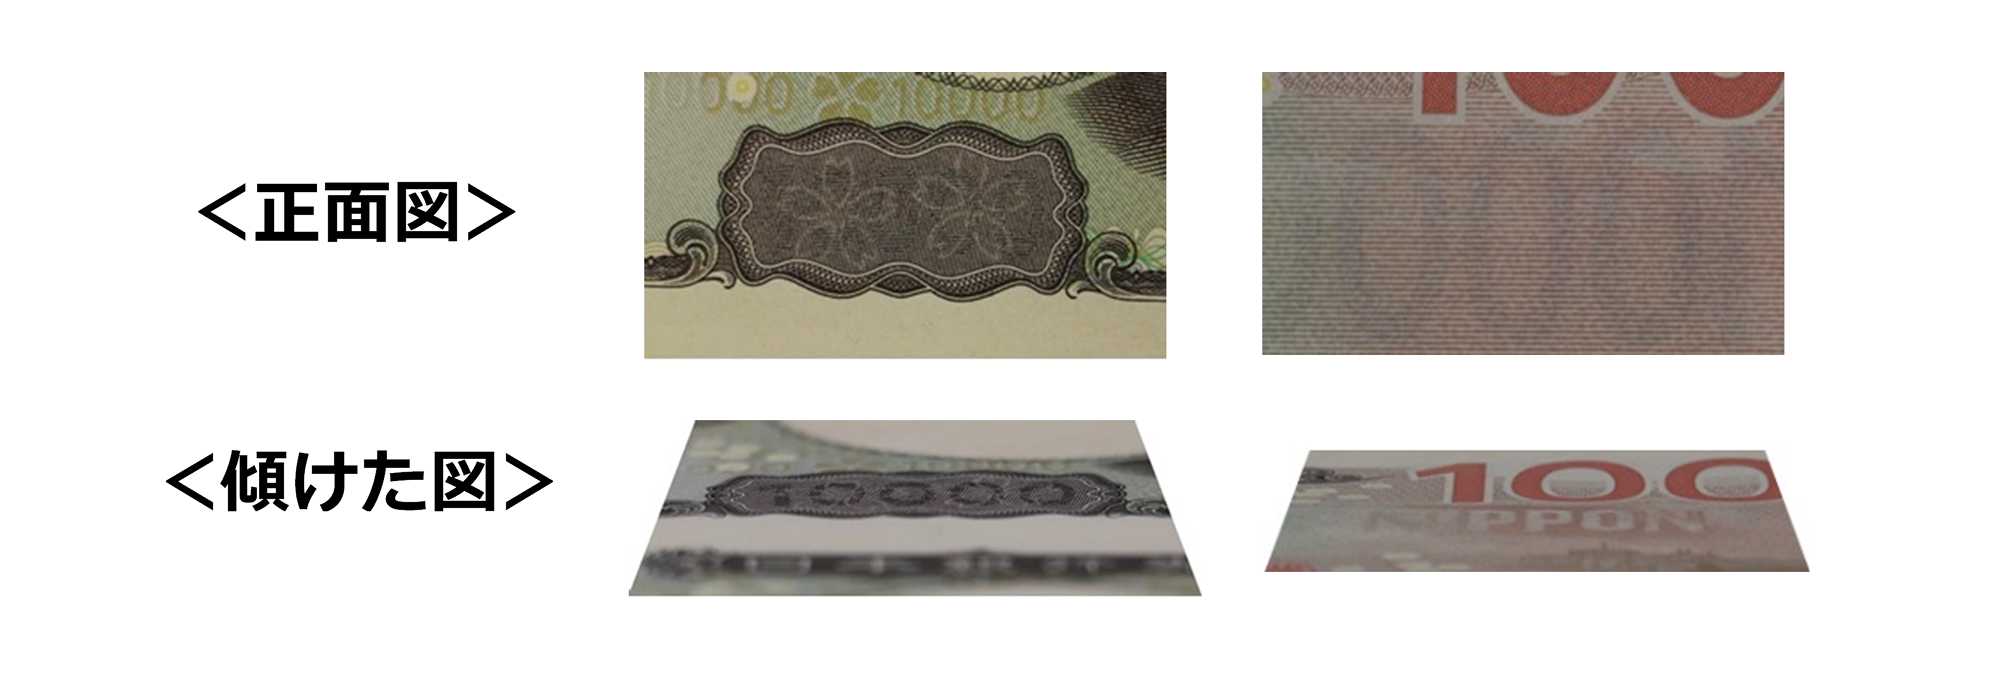 一万円券の表裏にある、潜像模様を正面から見た画像と、傾けて文字を浮び上がらせた画像。